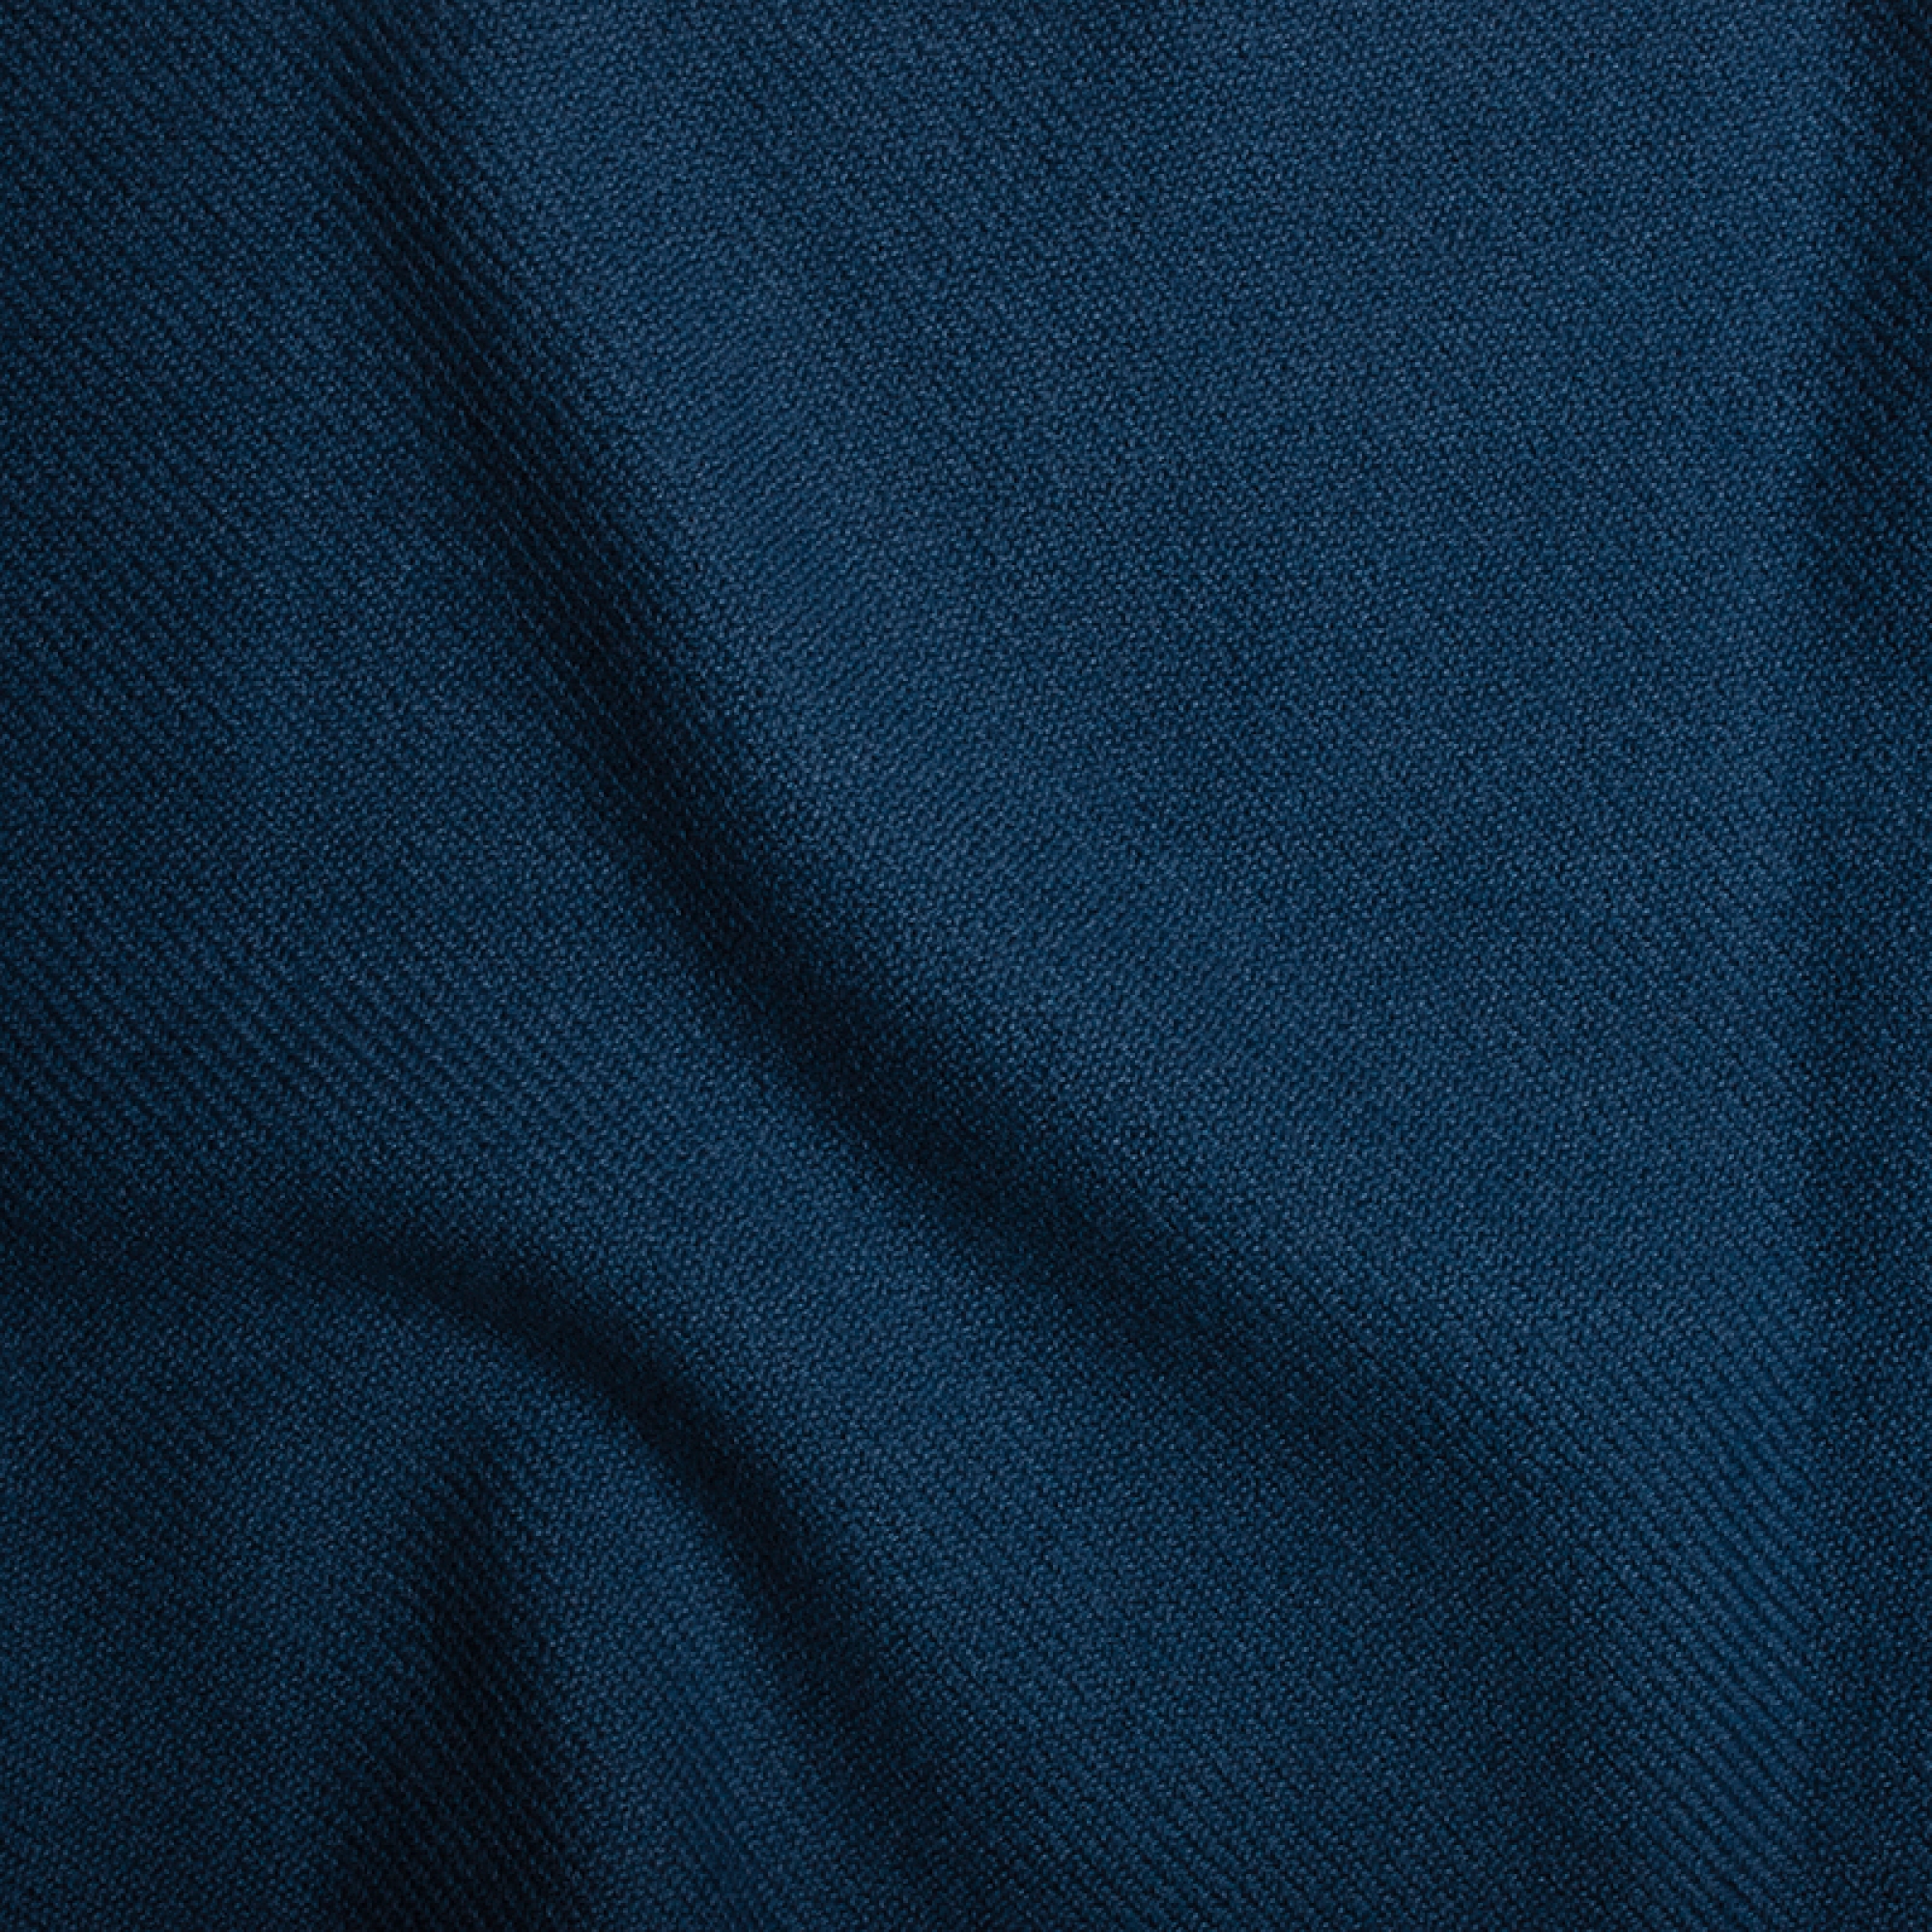 Cashmere uomo toodoo plain xl 240 x 260 blu di prussia 240 x 260 cm